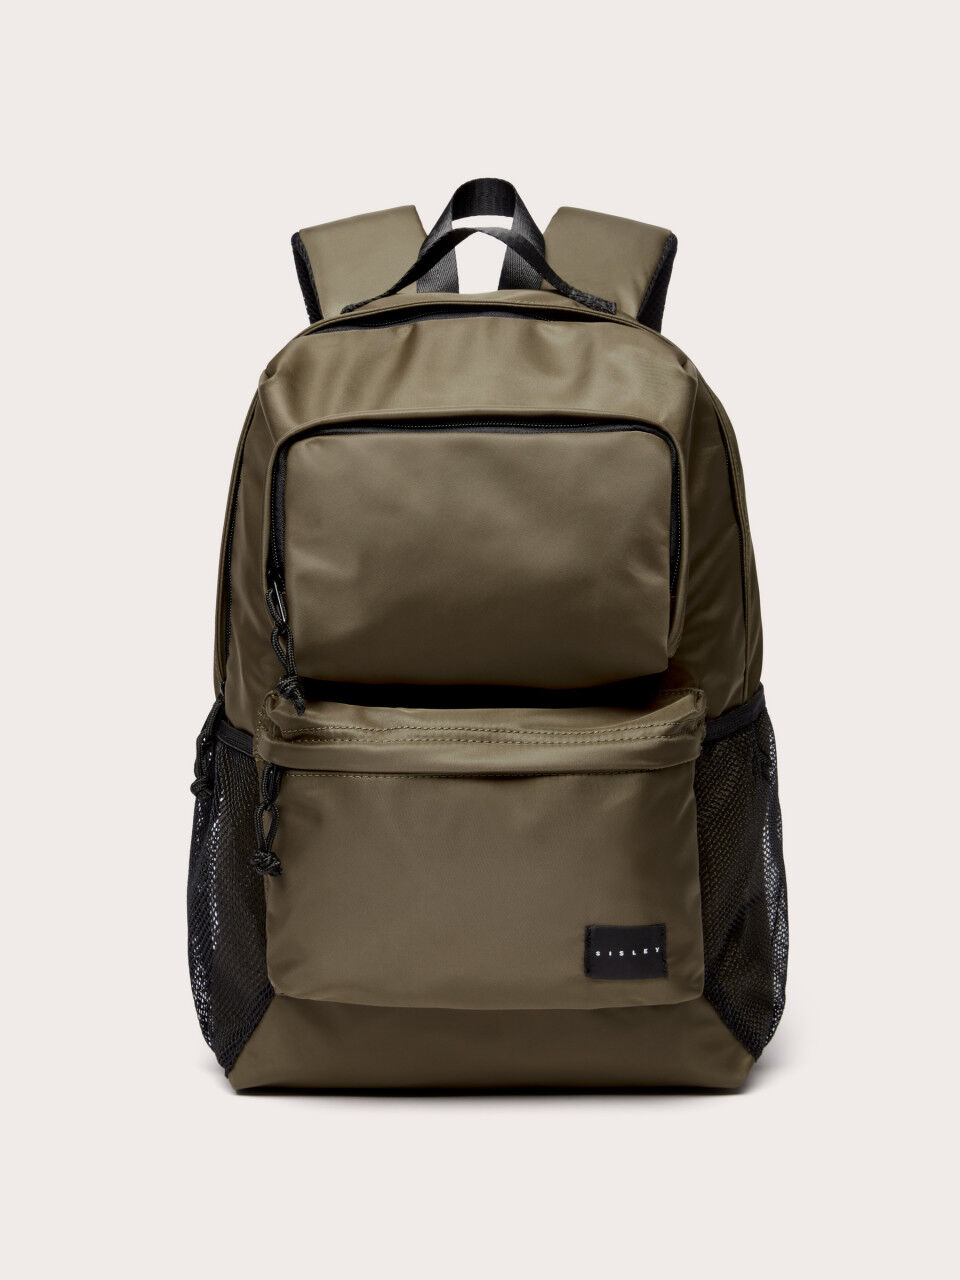 Multi-pocket backpack with laptop holder